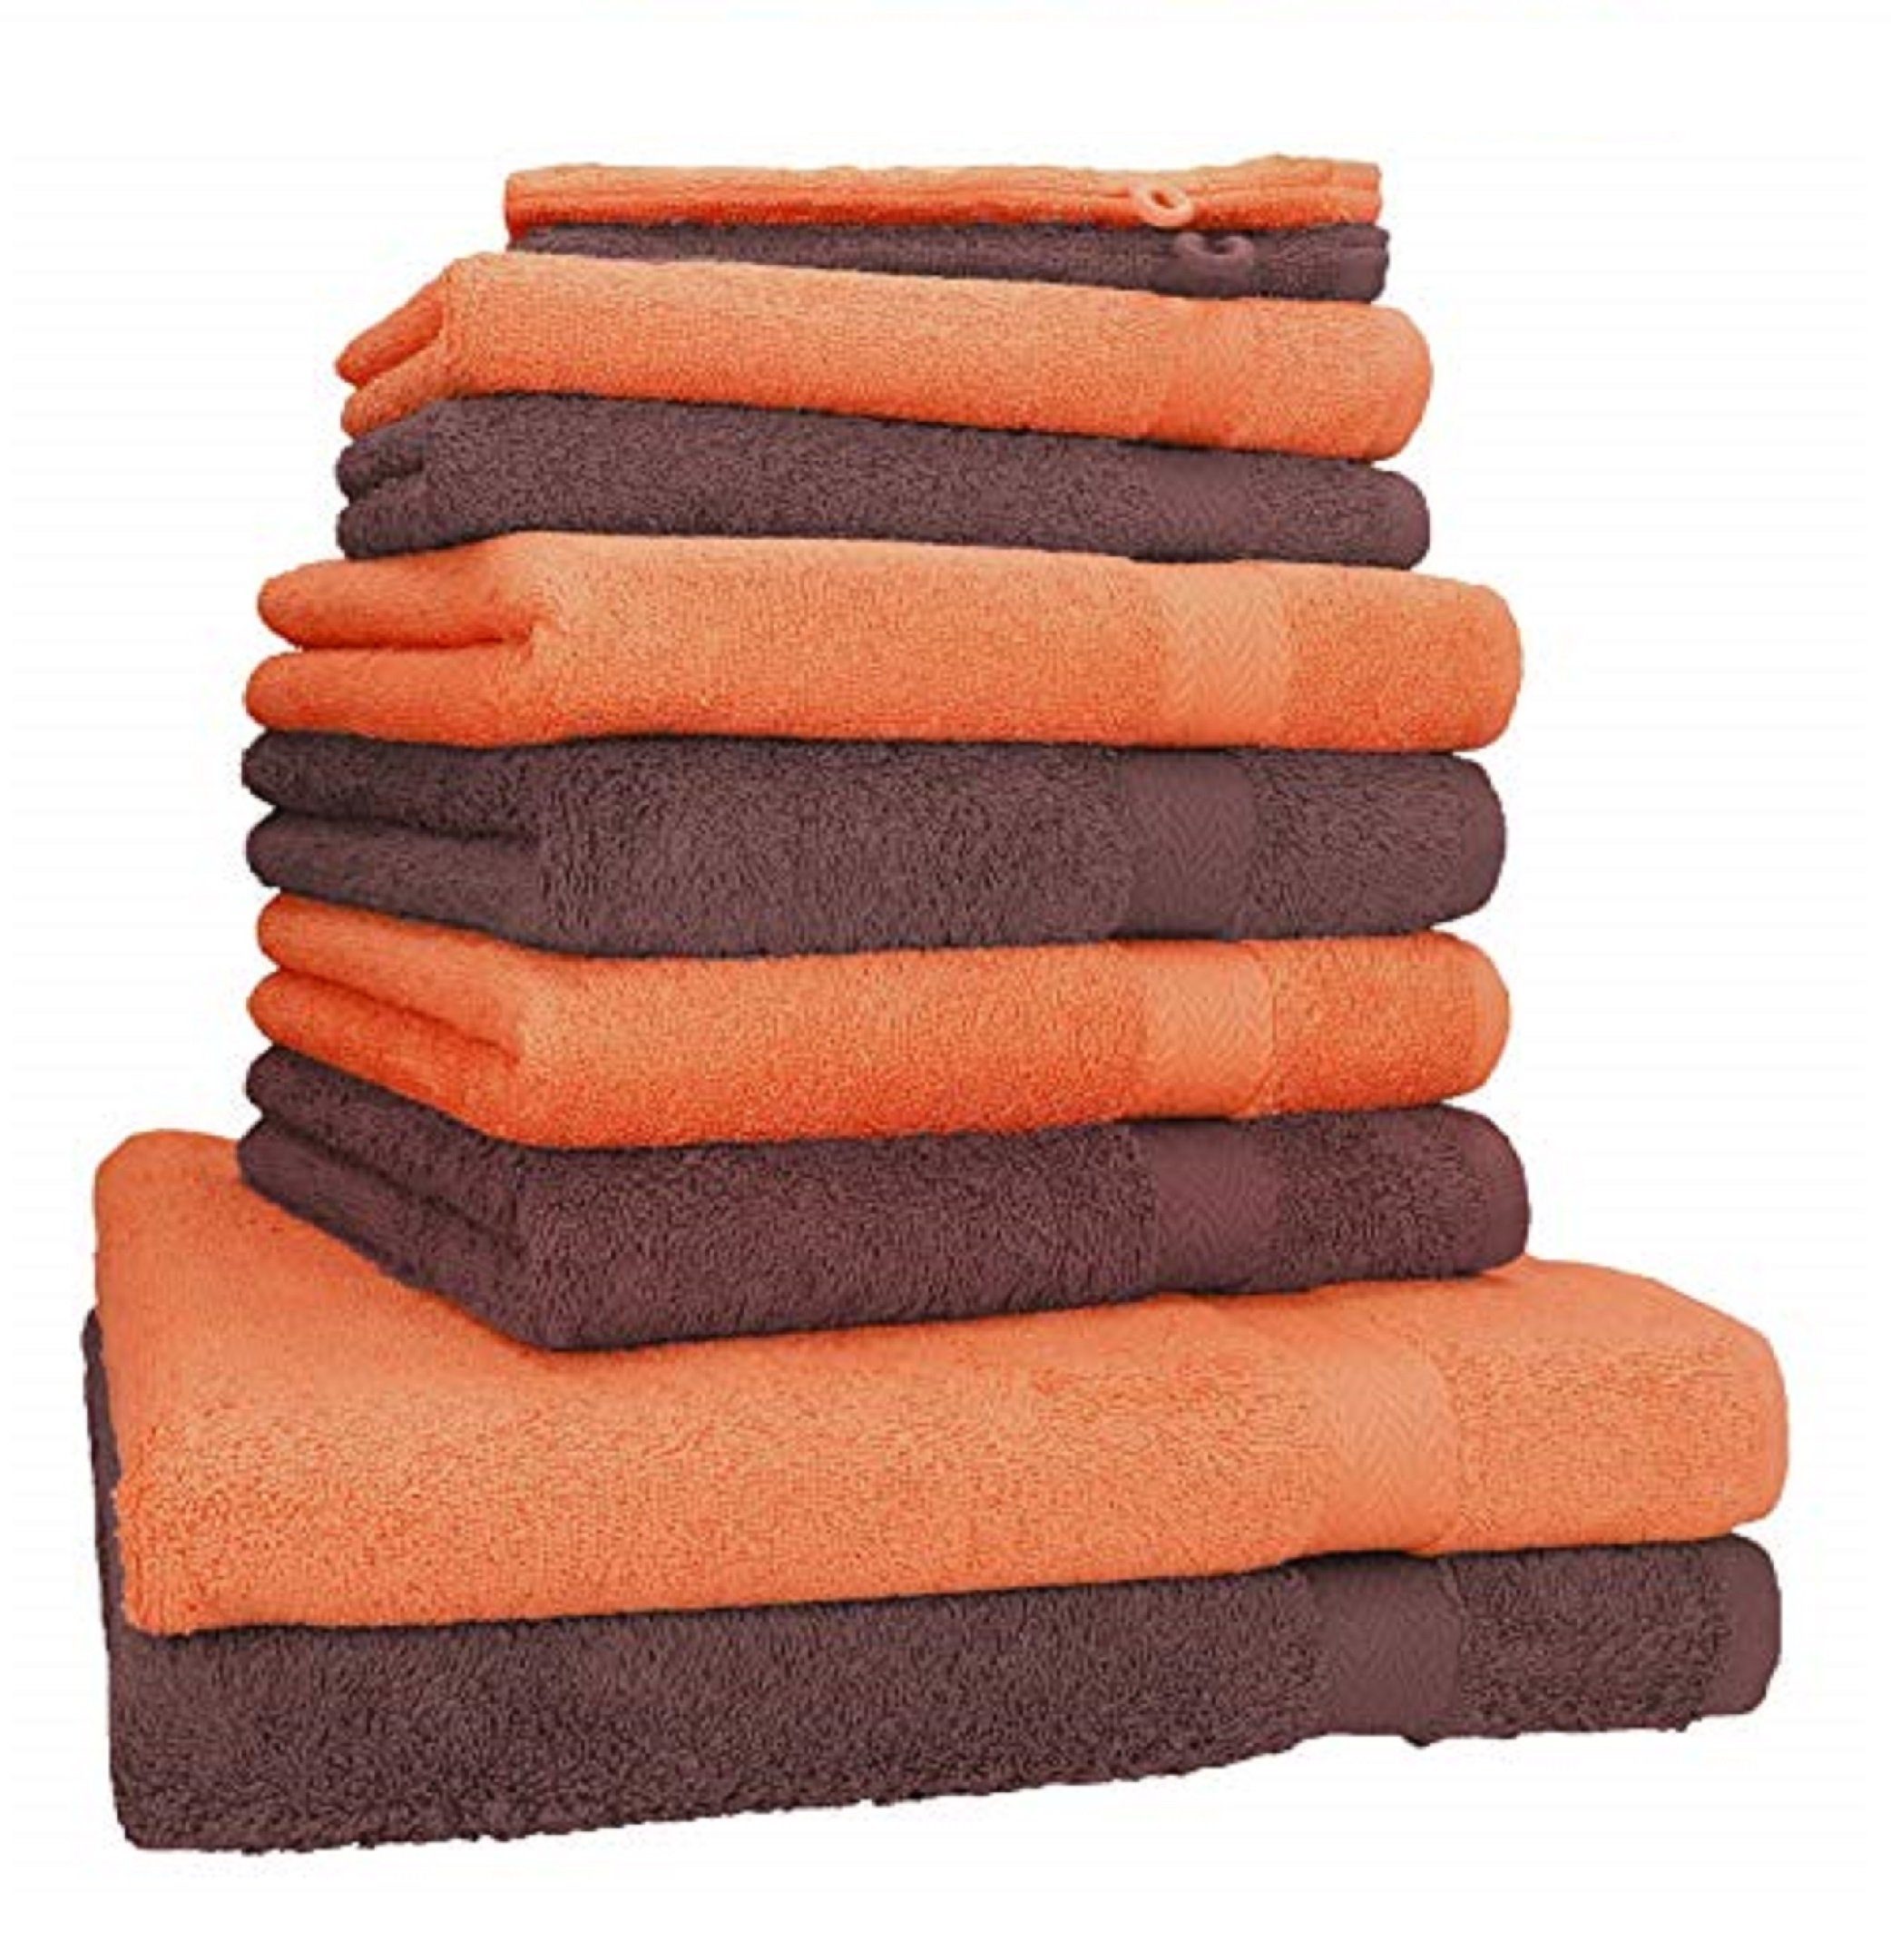 Handtuch-Set 10-TLG. Betz Handtuch (10-tlg) Premium Orange 100% Set & Baumwolle, Farbe Nussbraun,